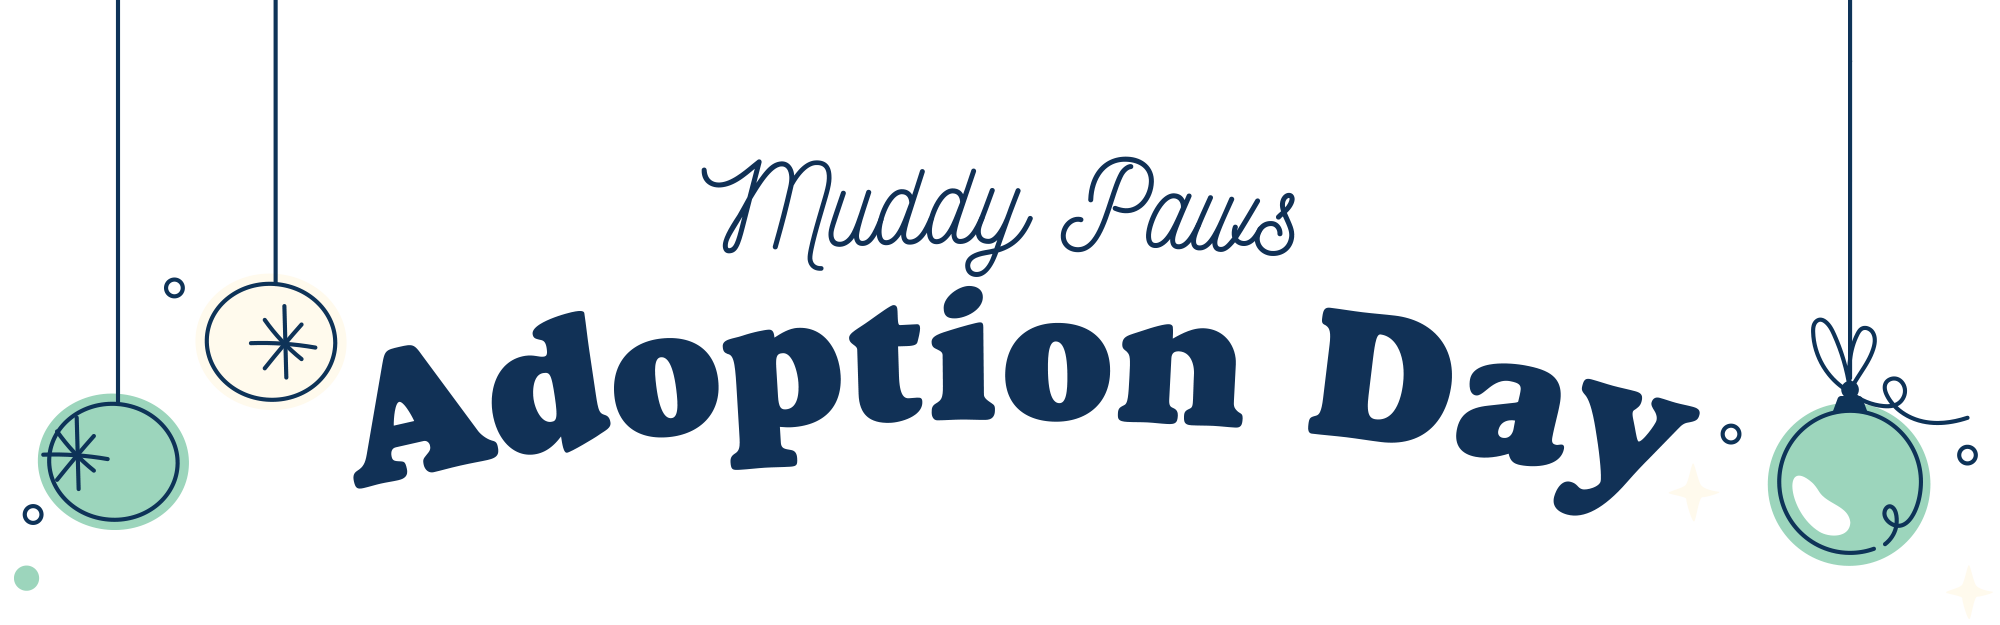 Wintrovert's Wonderland Muddy Paws Adoption Day